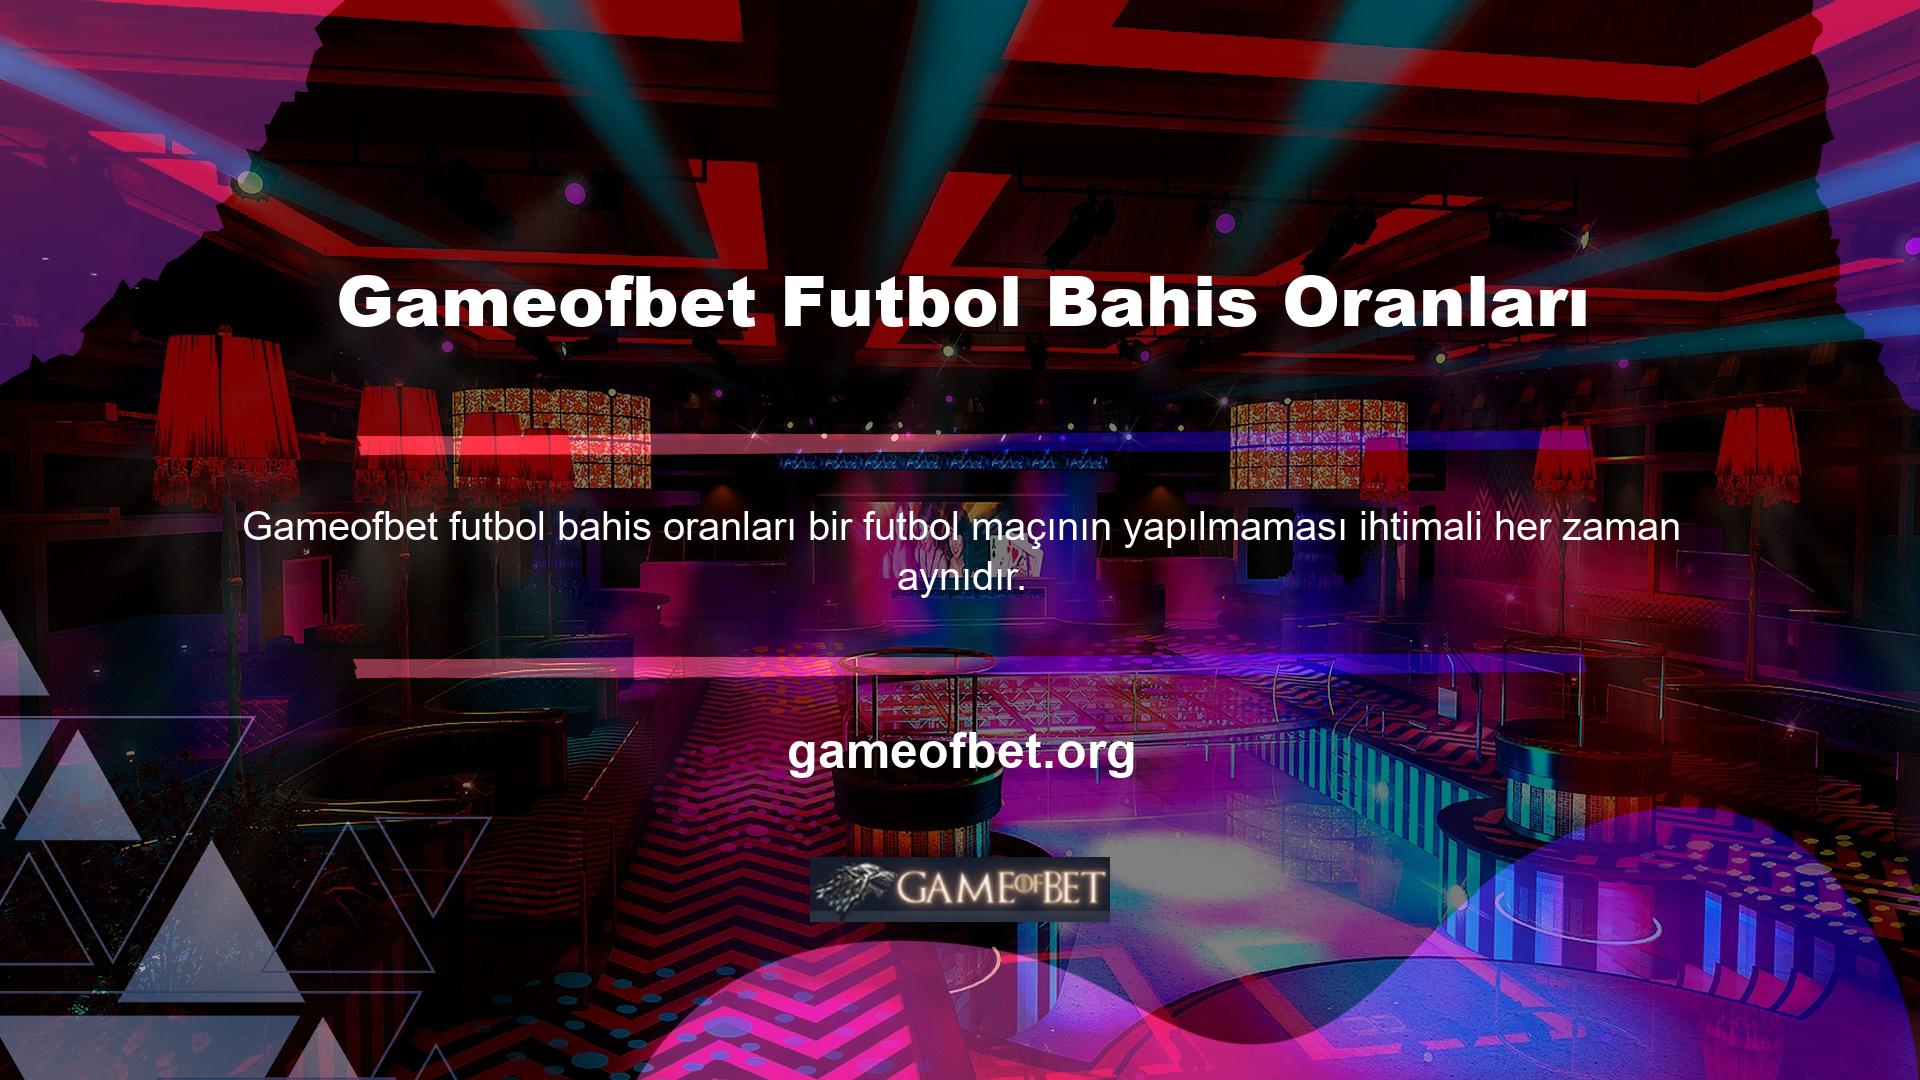 Gameofbet futbol bahisleri yaparken, oranların sürekli değiştiğini görebilirsiniz